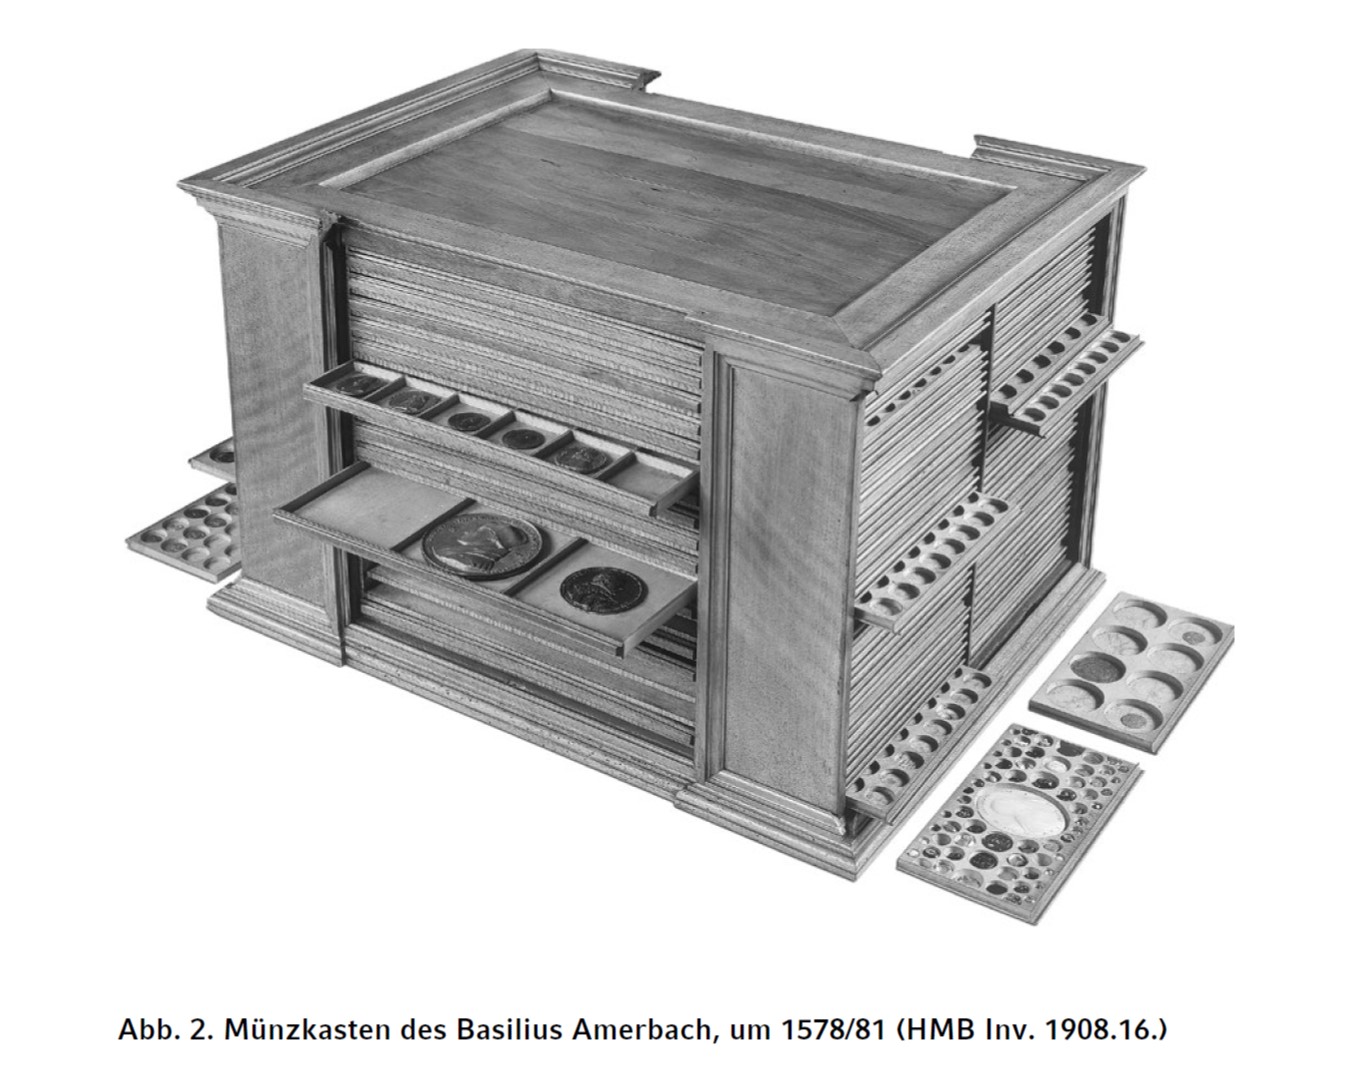 Amerbach, Basilius coin cabinet Matzke 2018.jpg